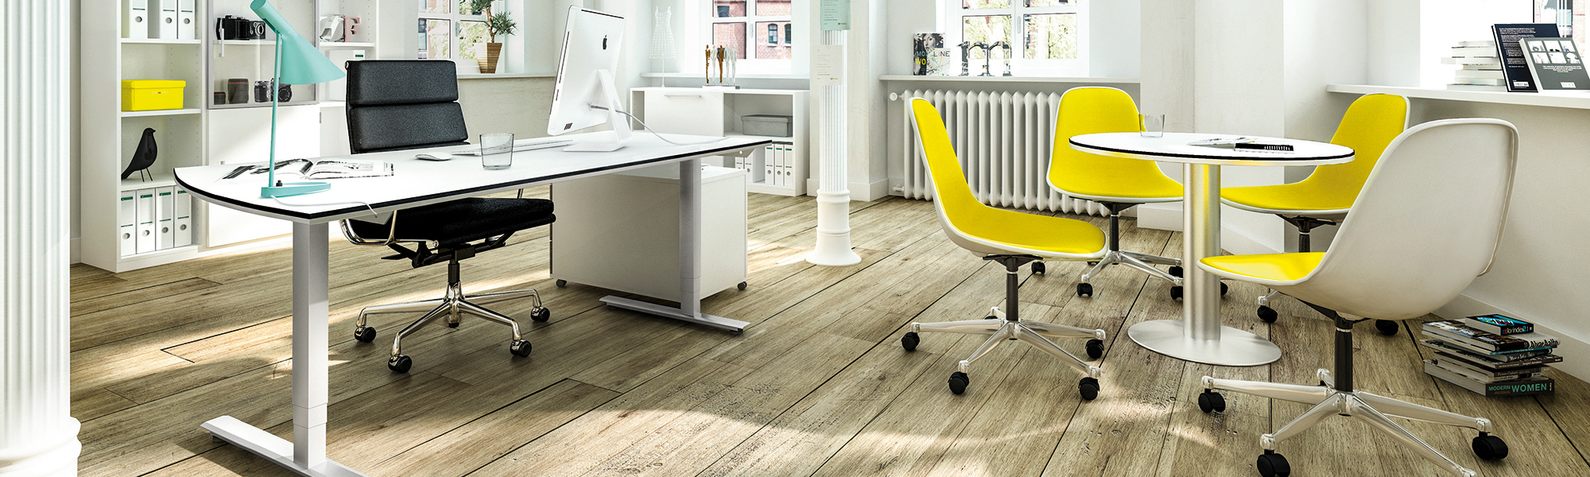 Schwarze und gelbe Schreibtischstühle und weiße Büromöbel